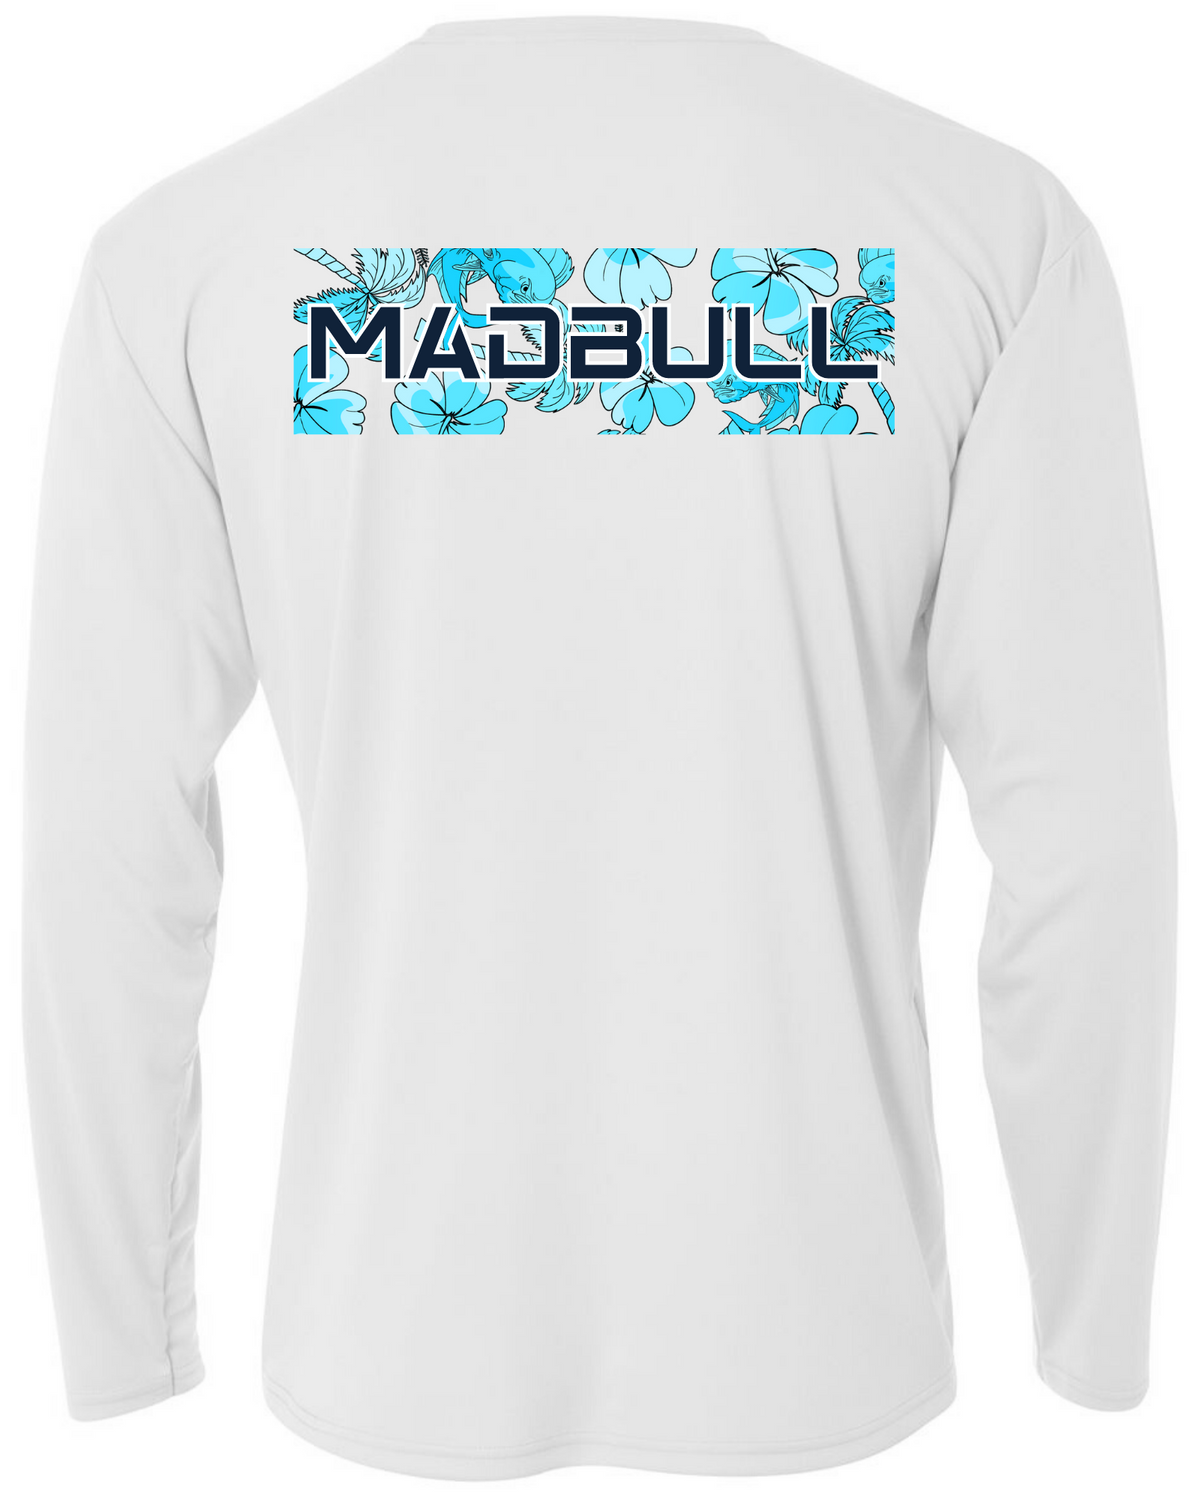 MadBull Tropics Performance Fishing Shirt